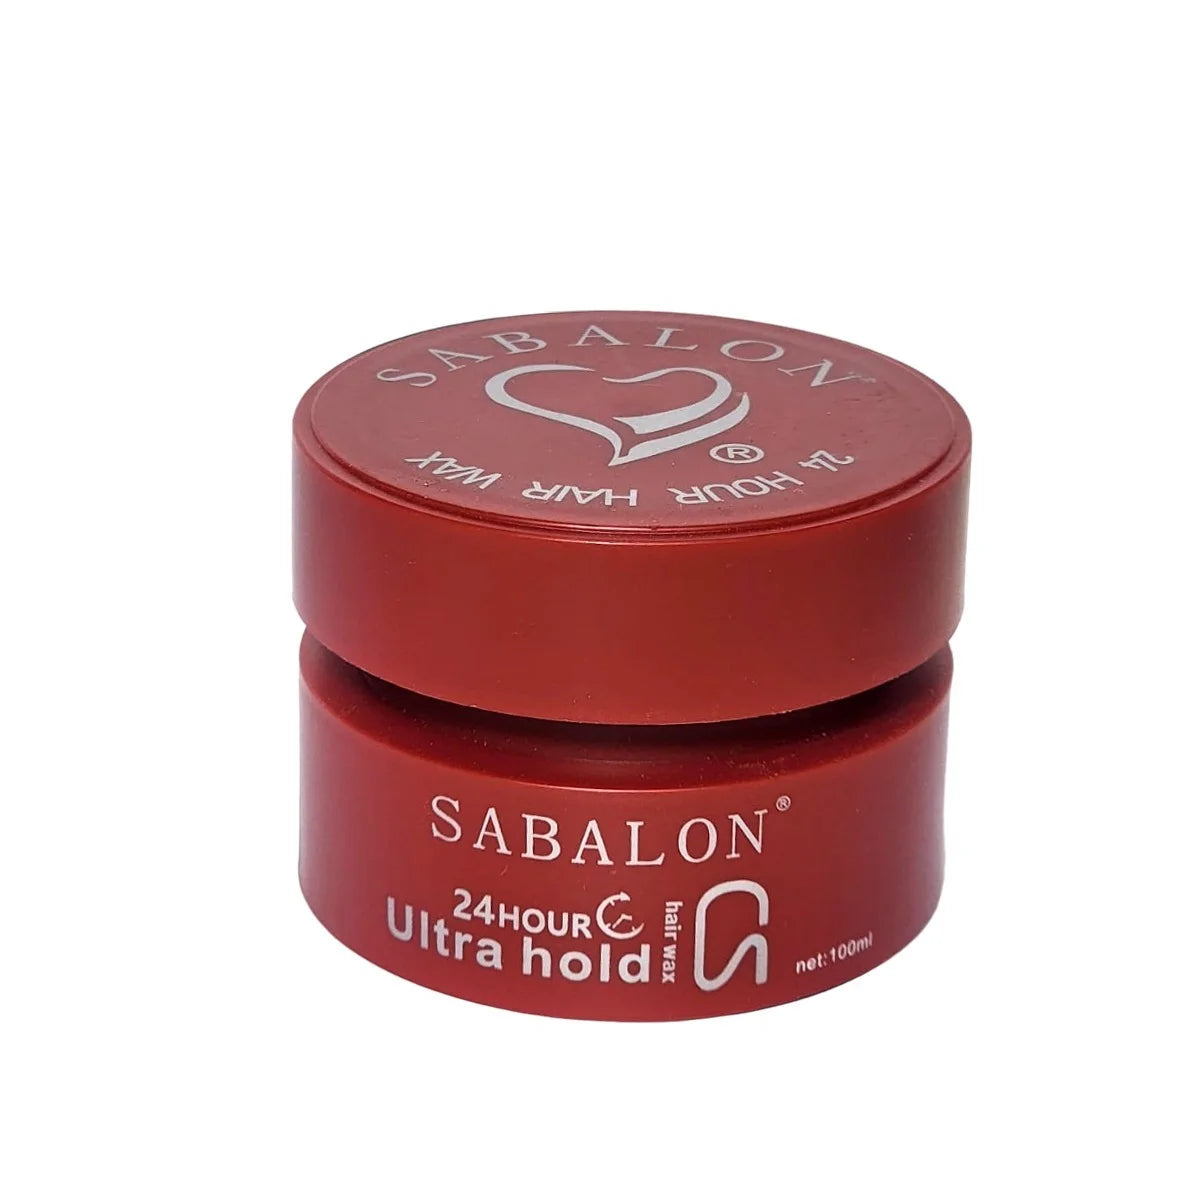 Sabalon 24 Hour Ultra Hold Hair Wax 100ml